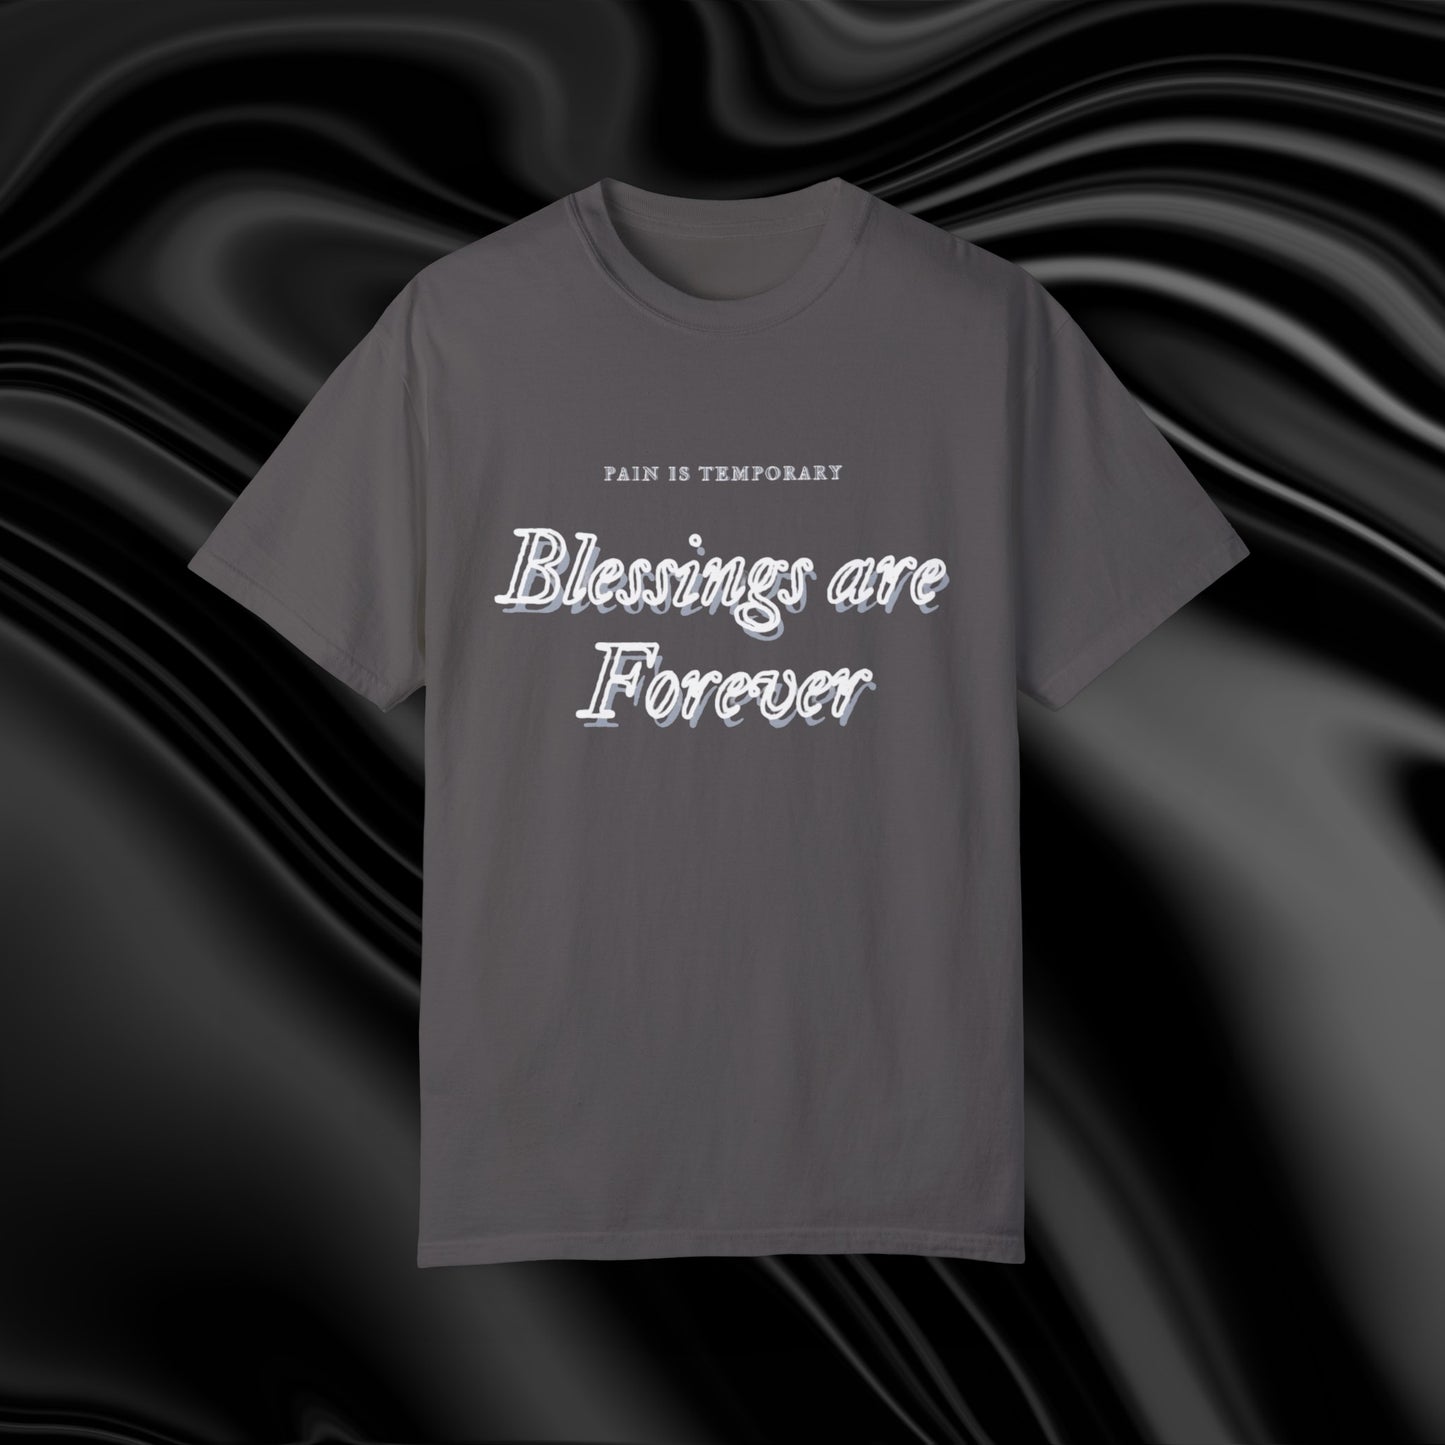 Blessings are Forever Shirt